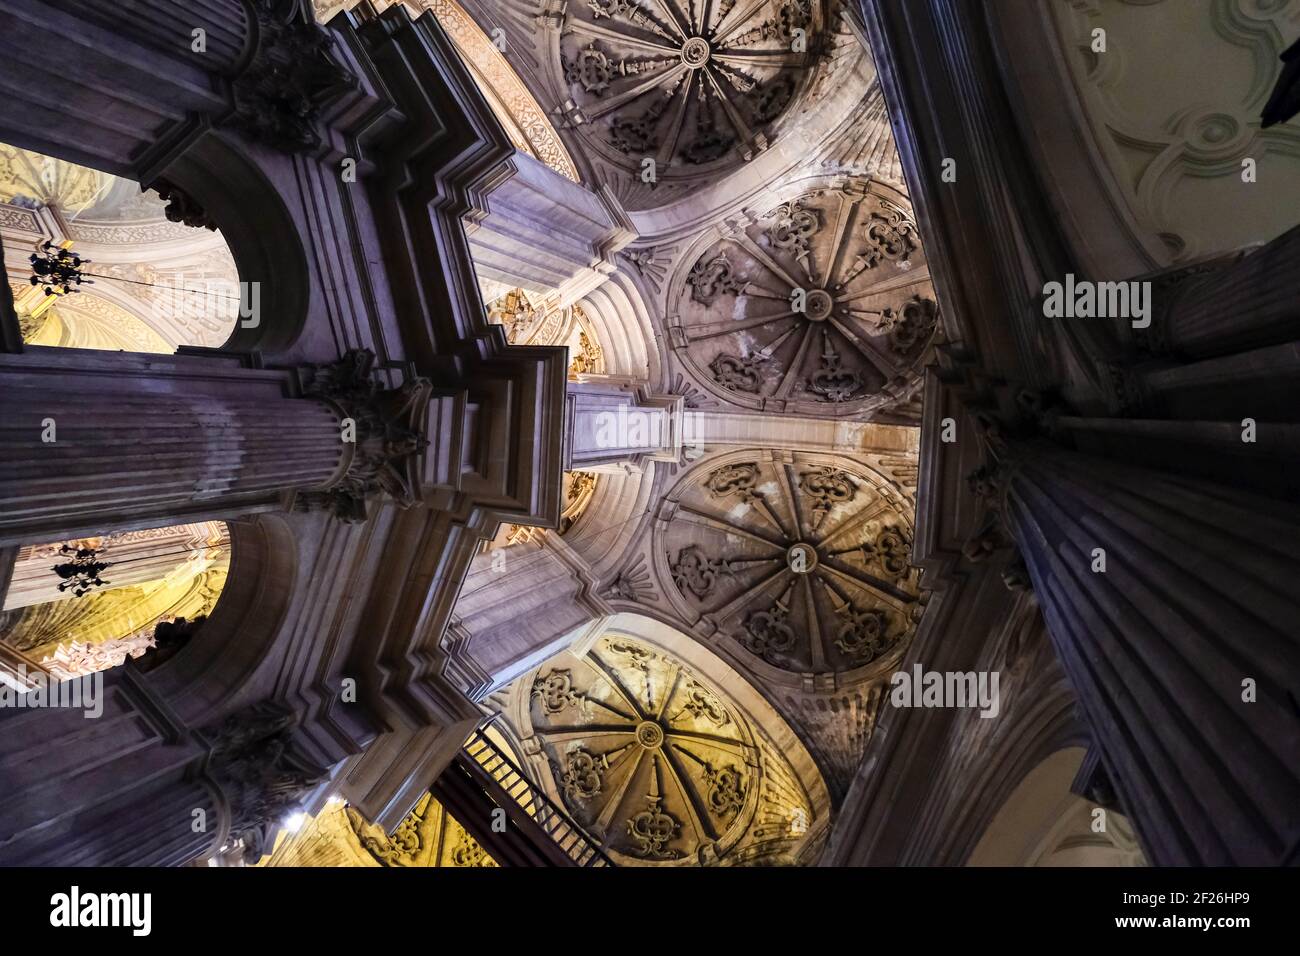 MALAGA, ANDALOUSIE/ESPAGNE - JUILLET 5 : vue intérieure de la cathédrale de l'Incarnation à Malaga Costa del sol Espagne le 5 juillet 20 Banque D'Images